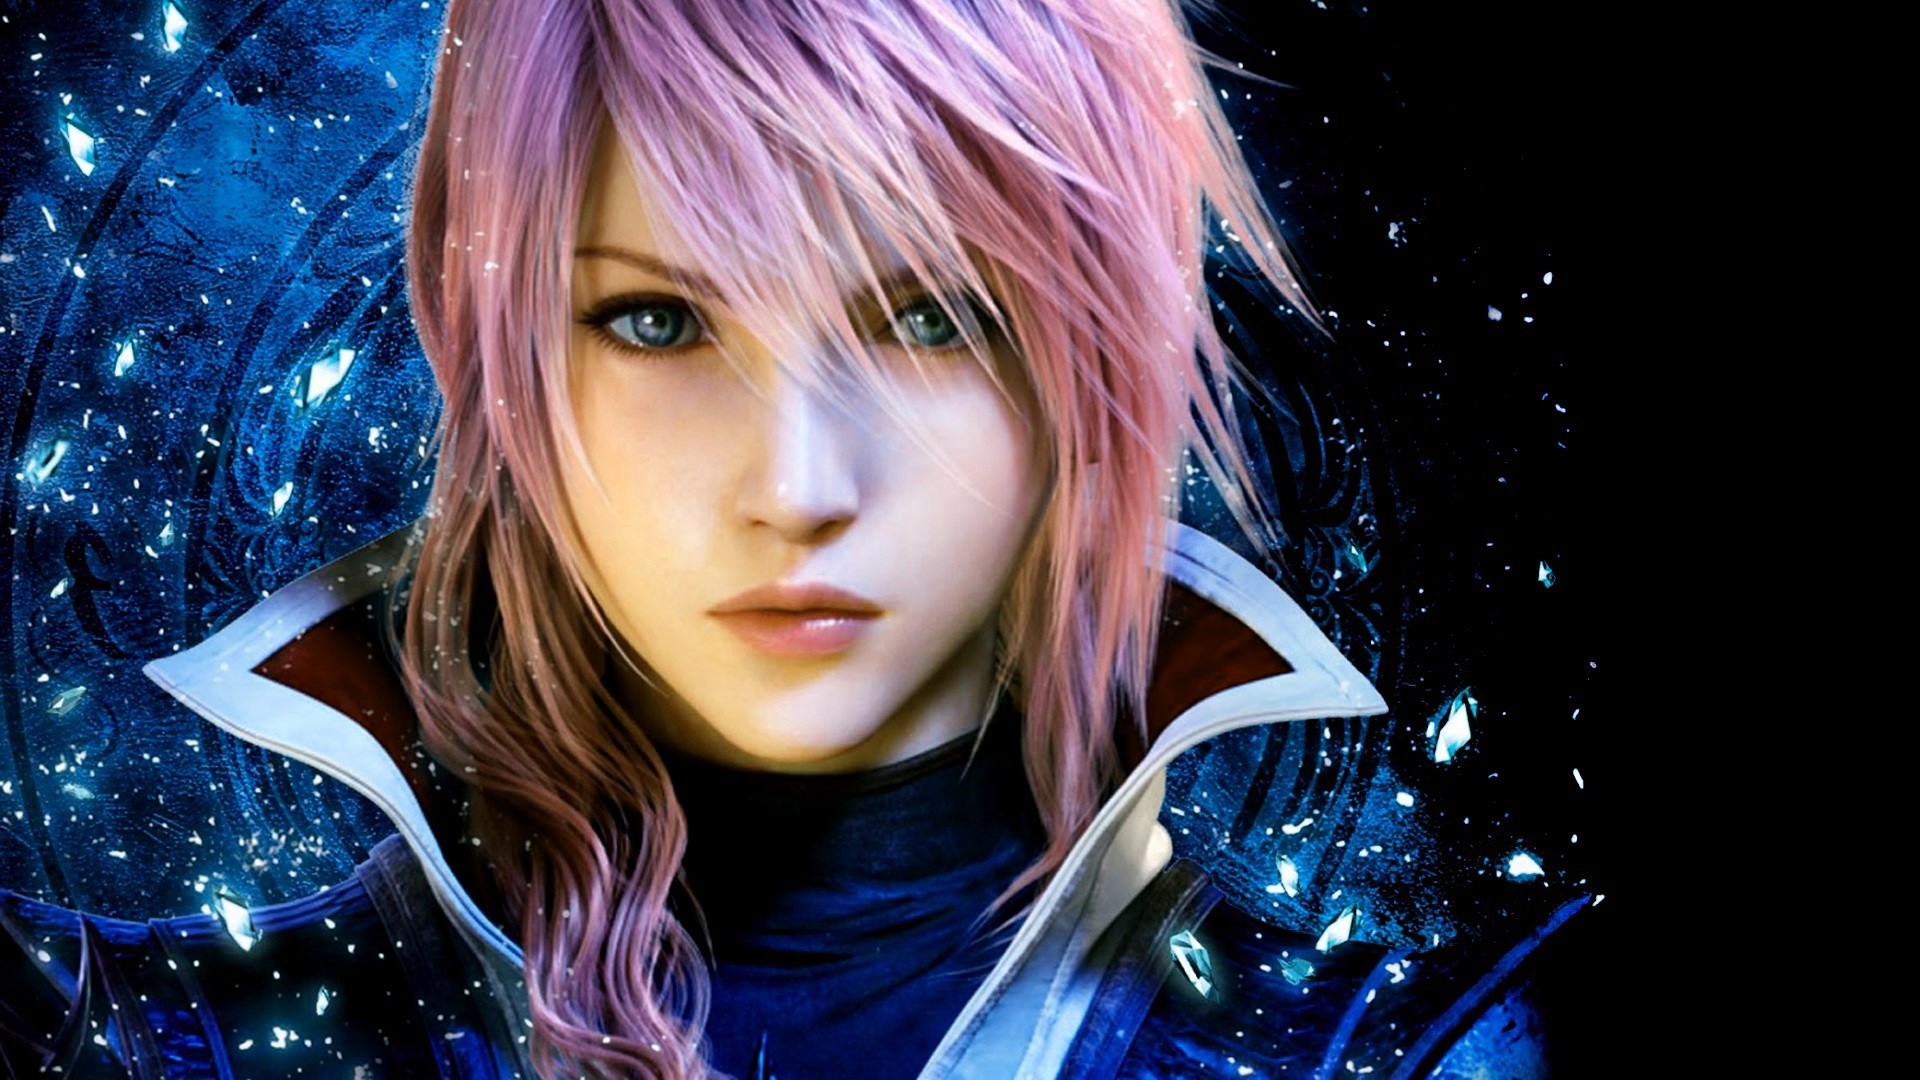 Final Fantasy Lightning Wallpaper HD Image